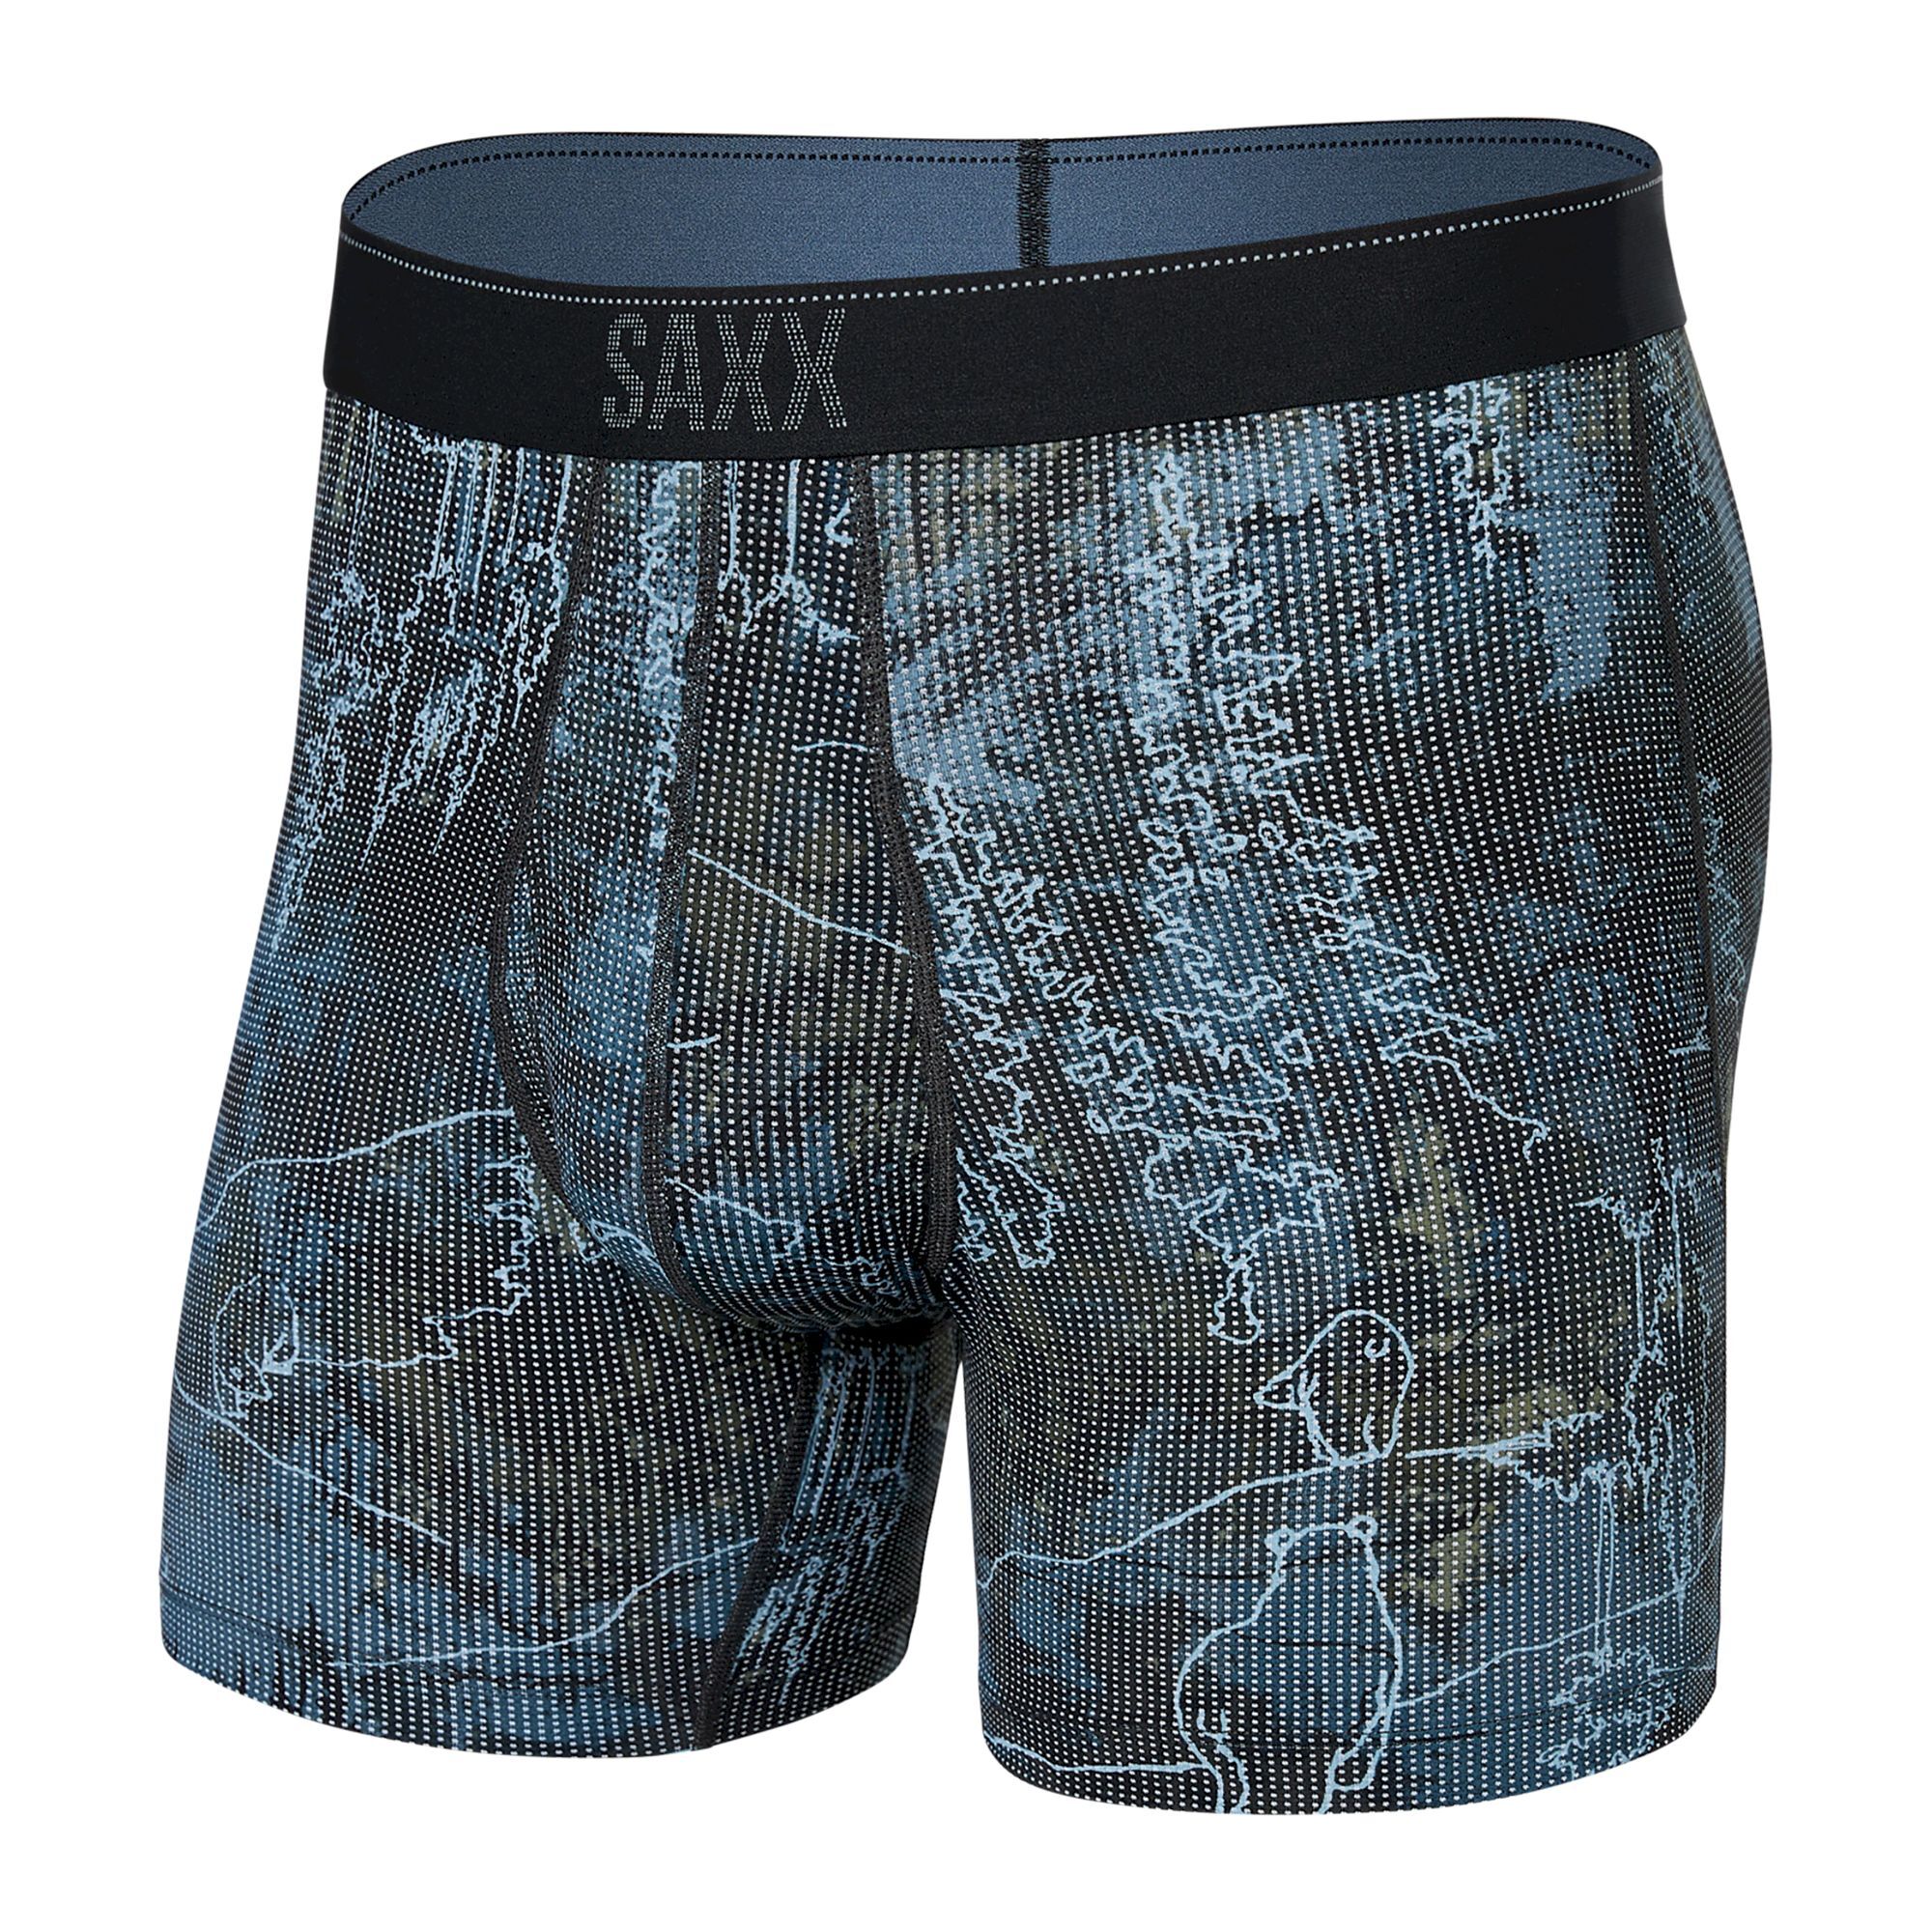 Saxx Quest Boxer Brief Fly - Underwear - Men's